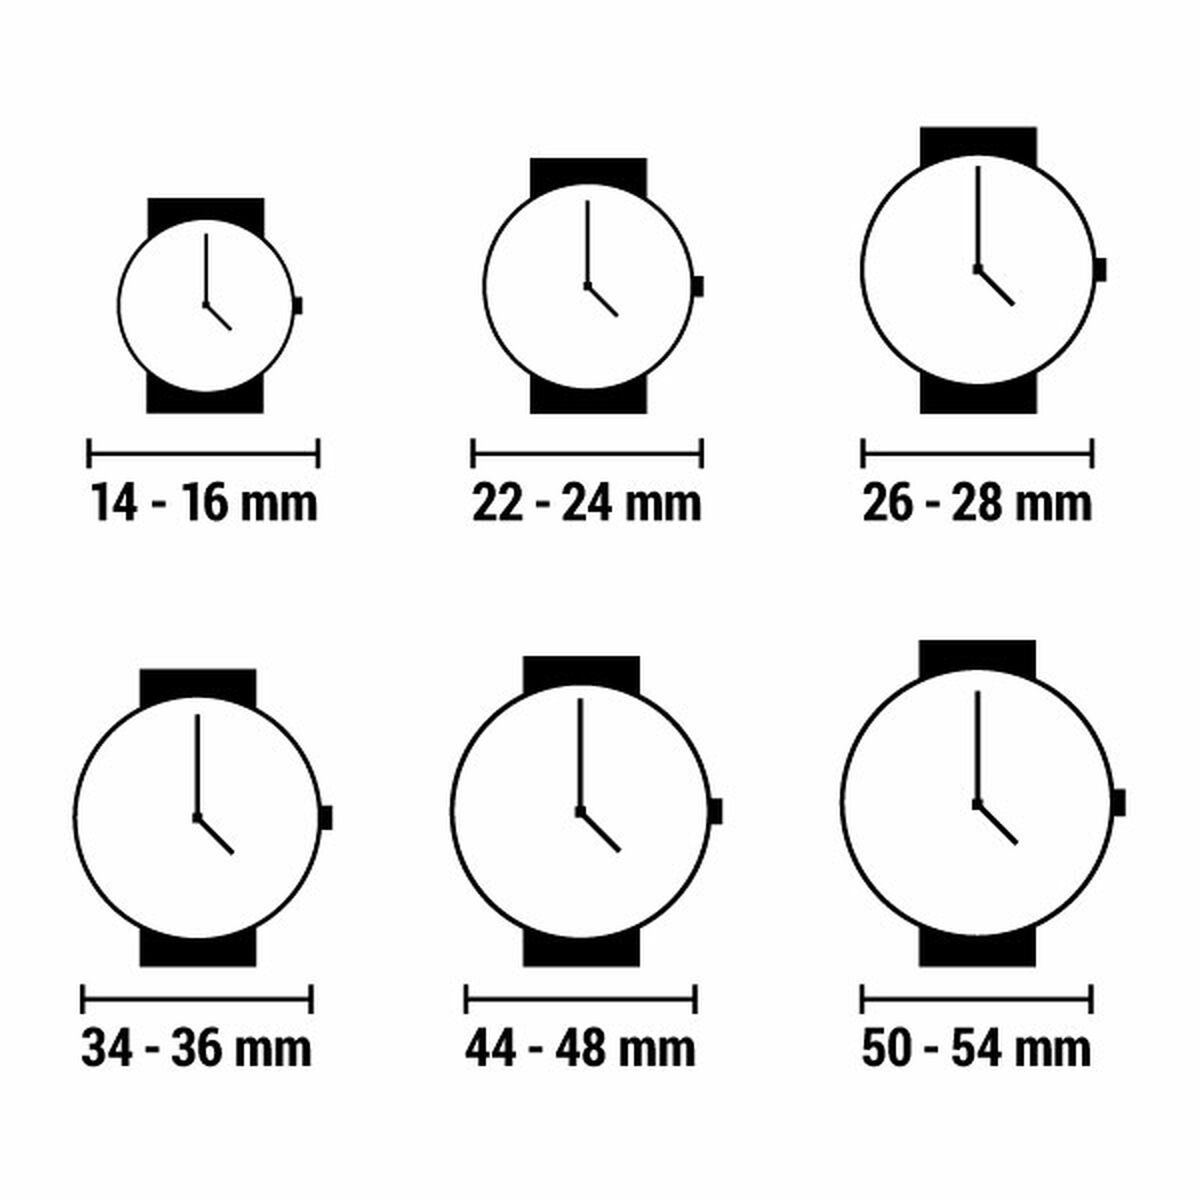 Horloge Dames Bellevue I.11 (Ø 35 mm)